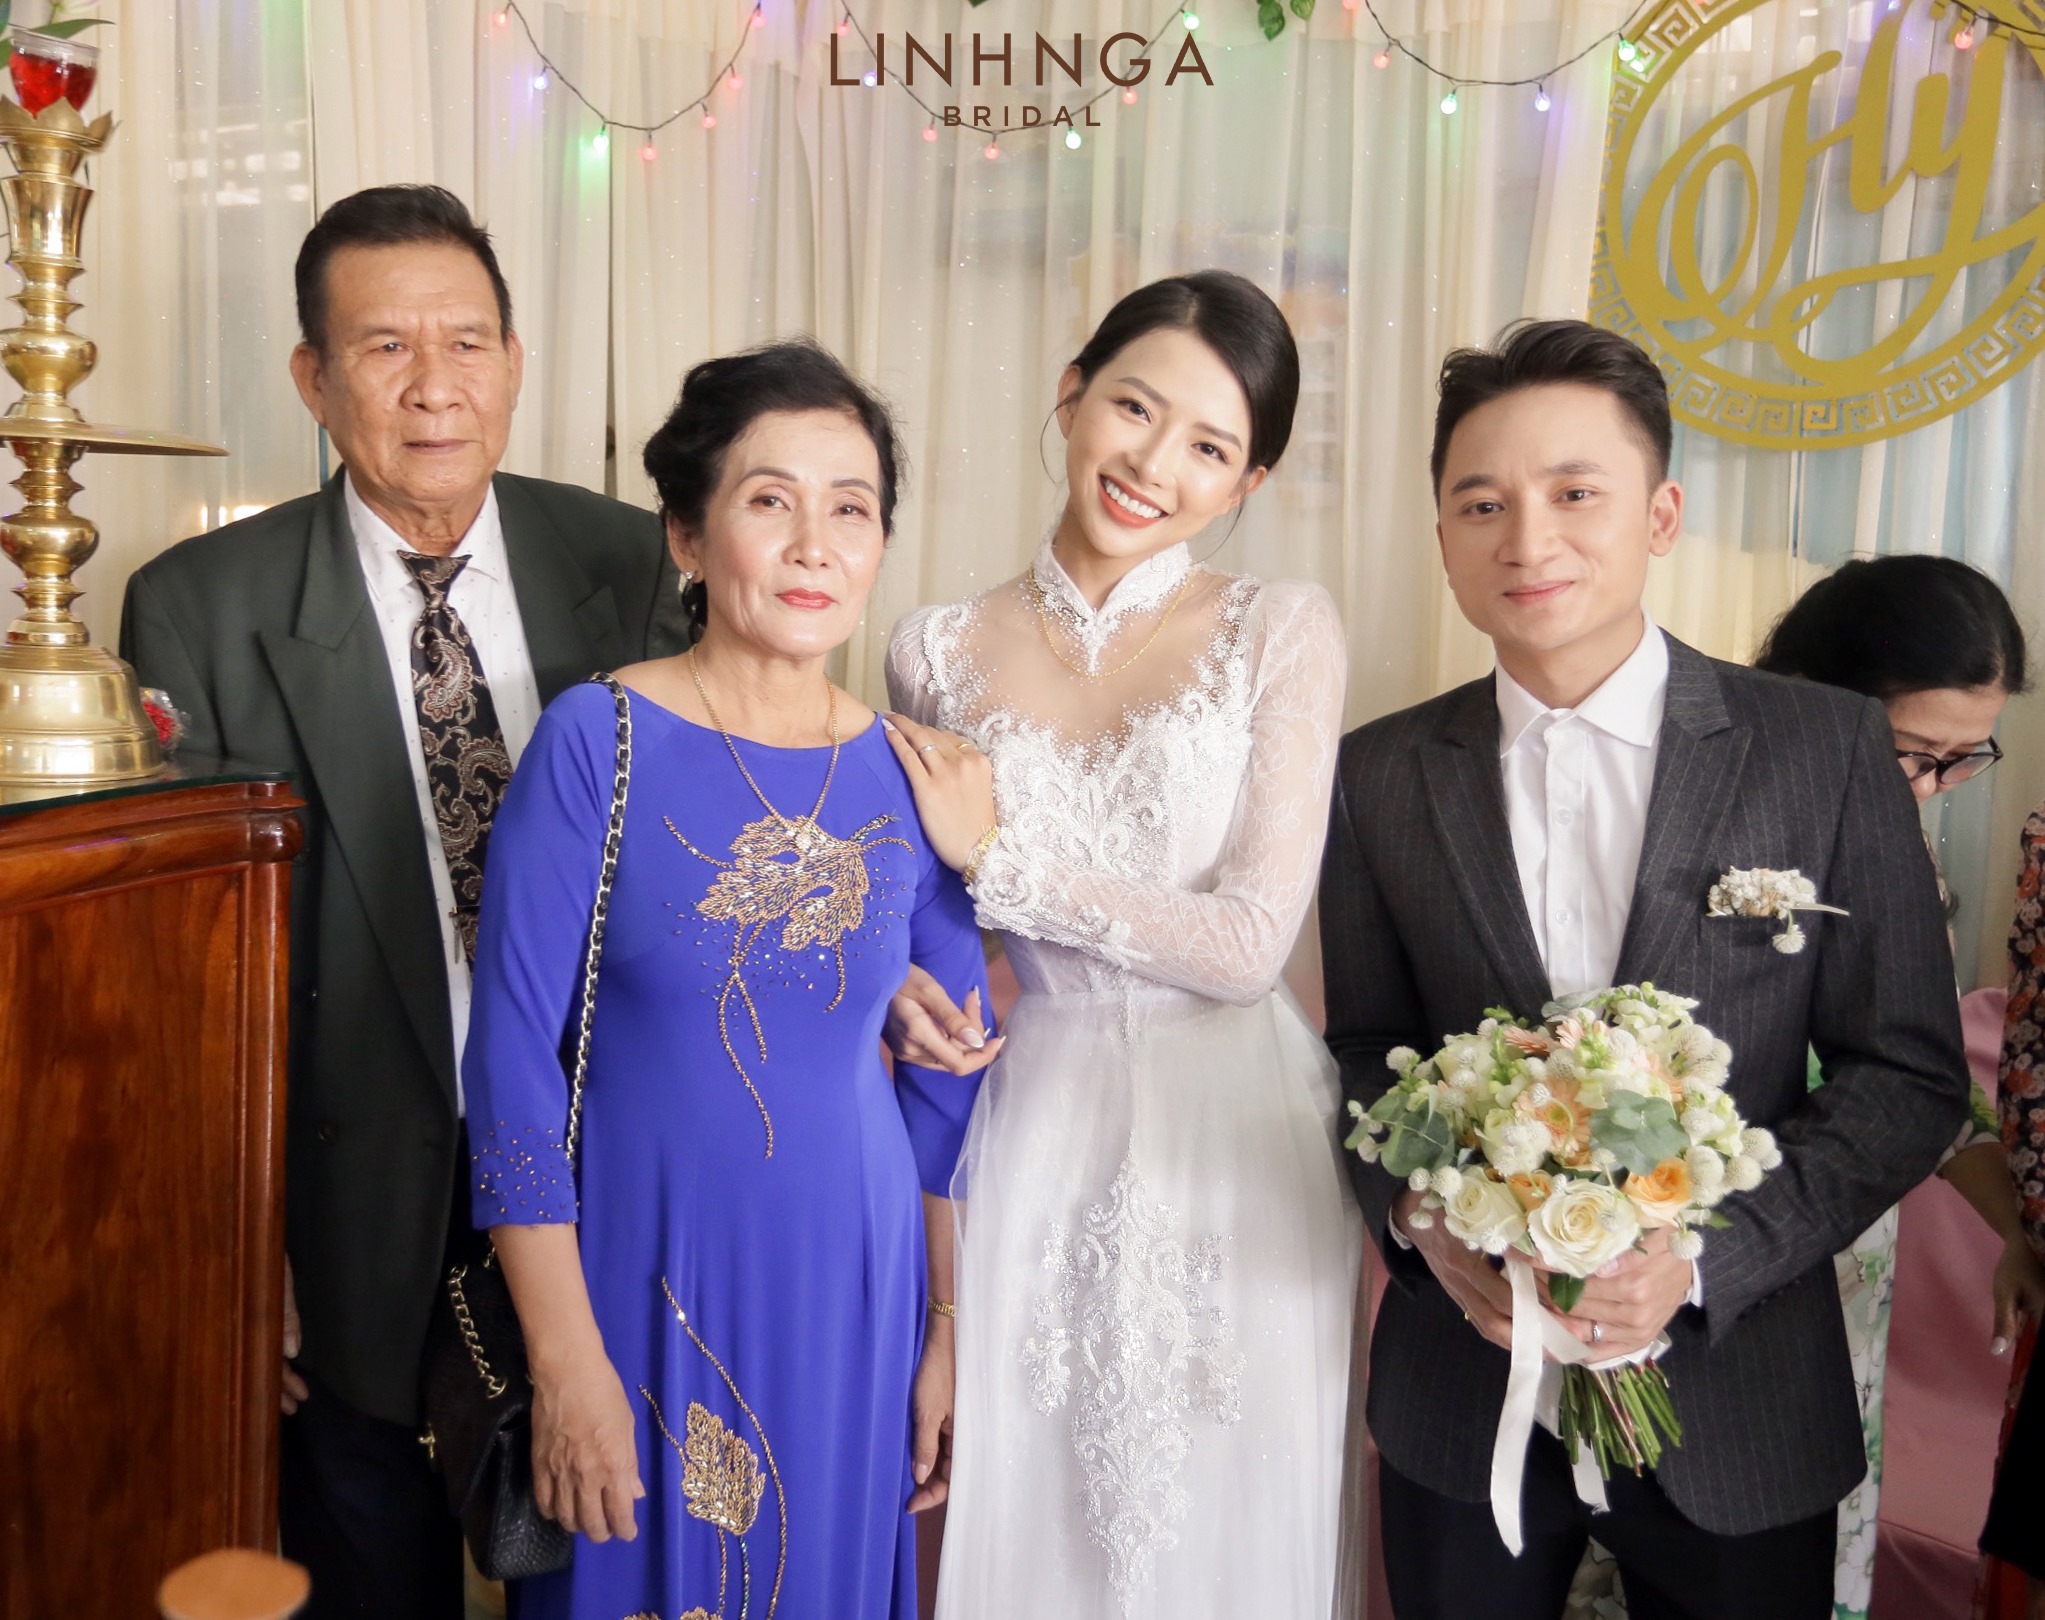 Đám cưới Phan Mạnh Quỳnh và vợ hot girl tại Nha Trang: Cô dâu khoe vòng 1 hững hờ, “cẩu lương” ngập trời trong ngày trọng đại - Ảnh 3.